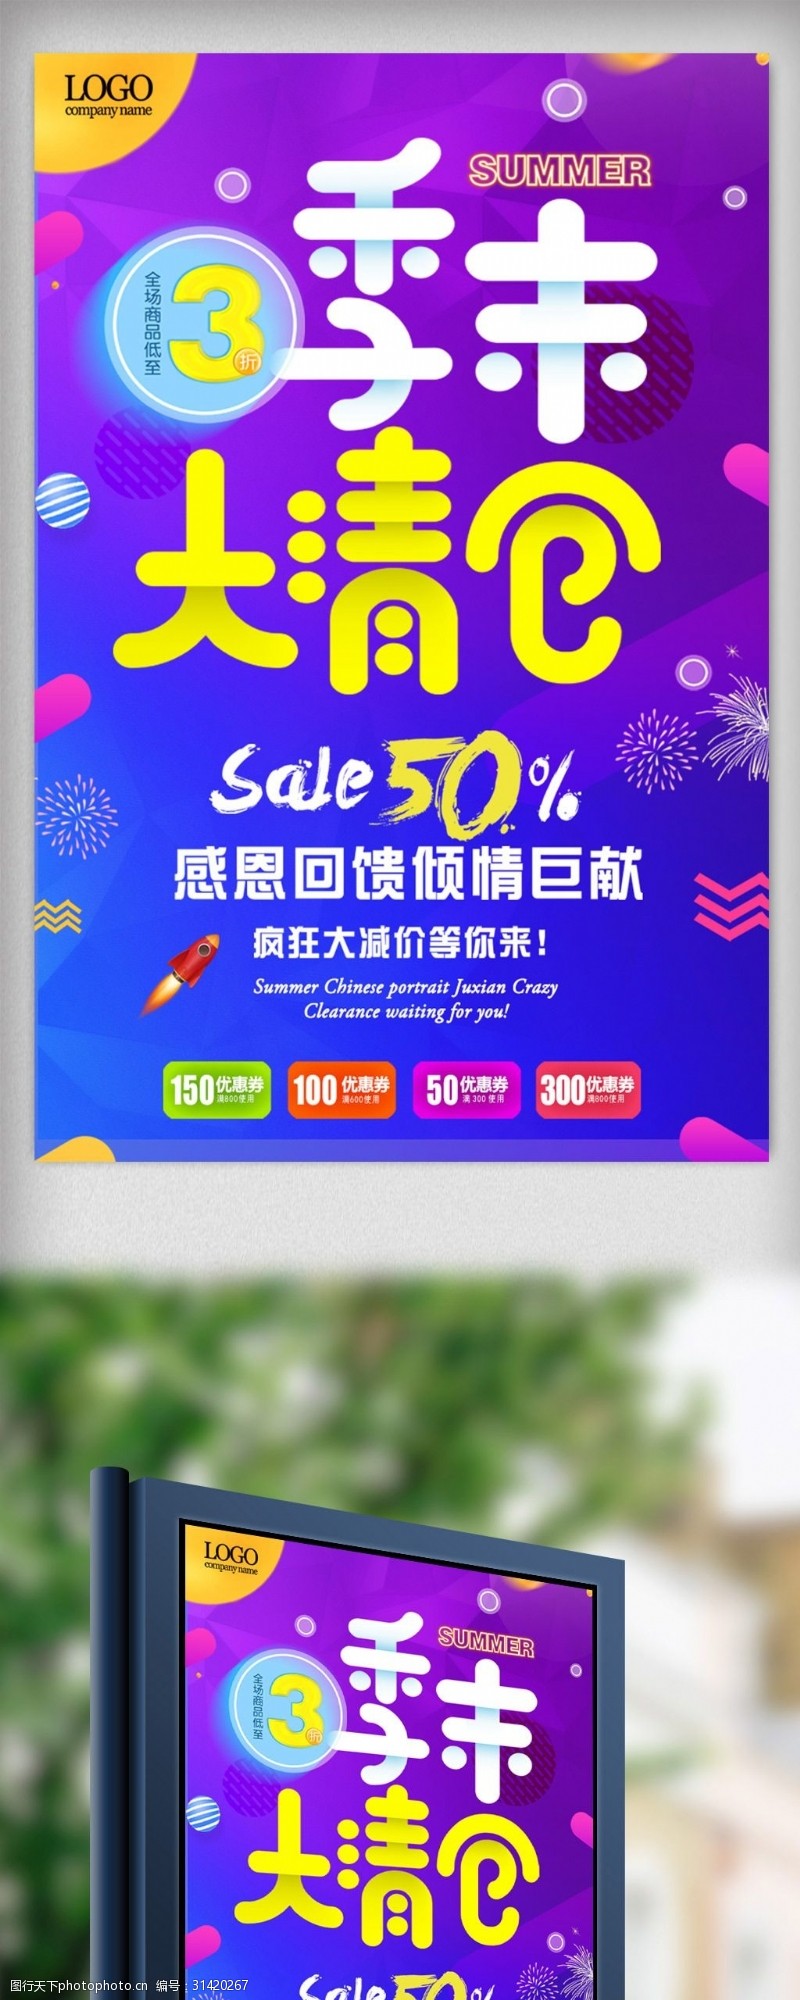 年末季末清仓大促销商场宣传炫彩海报